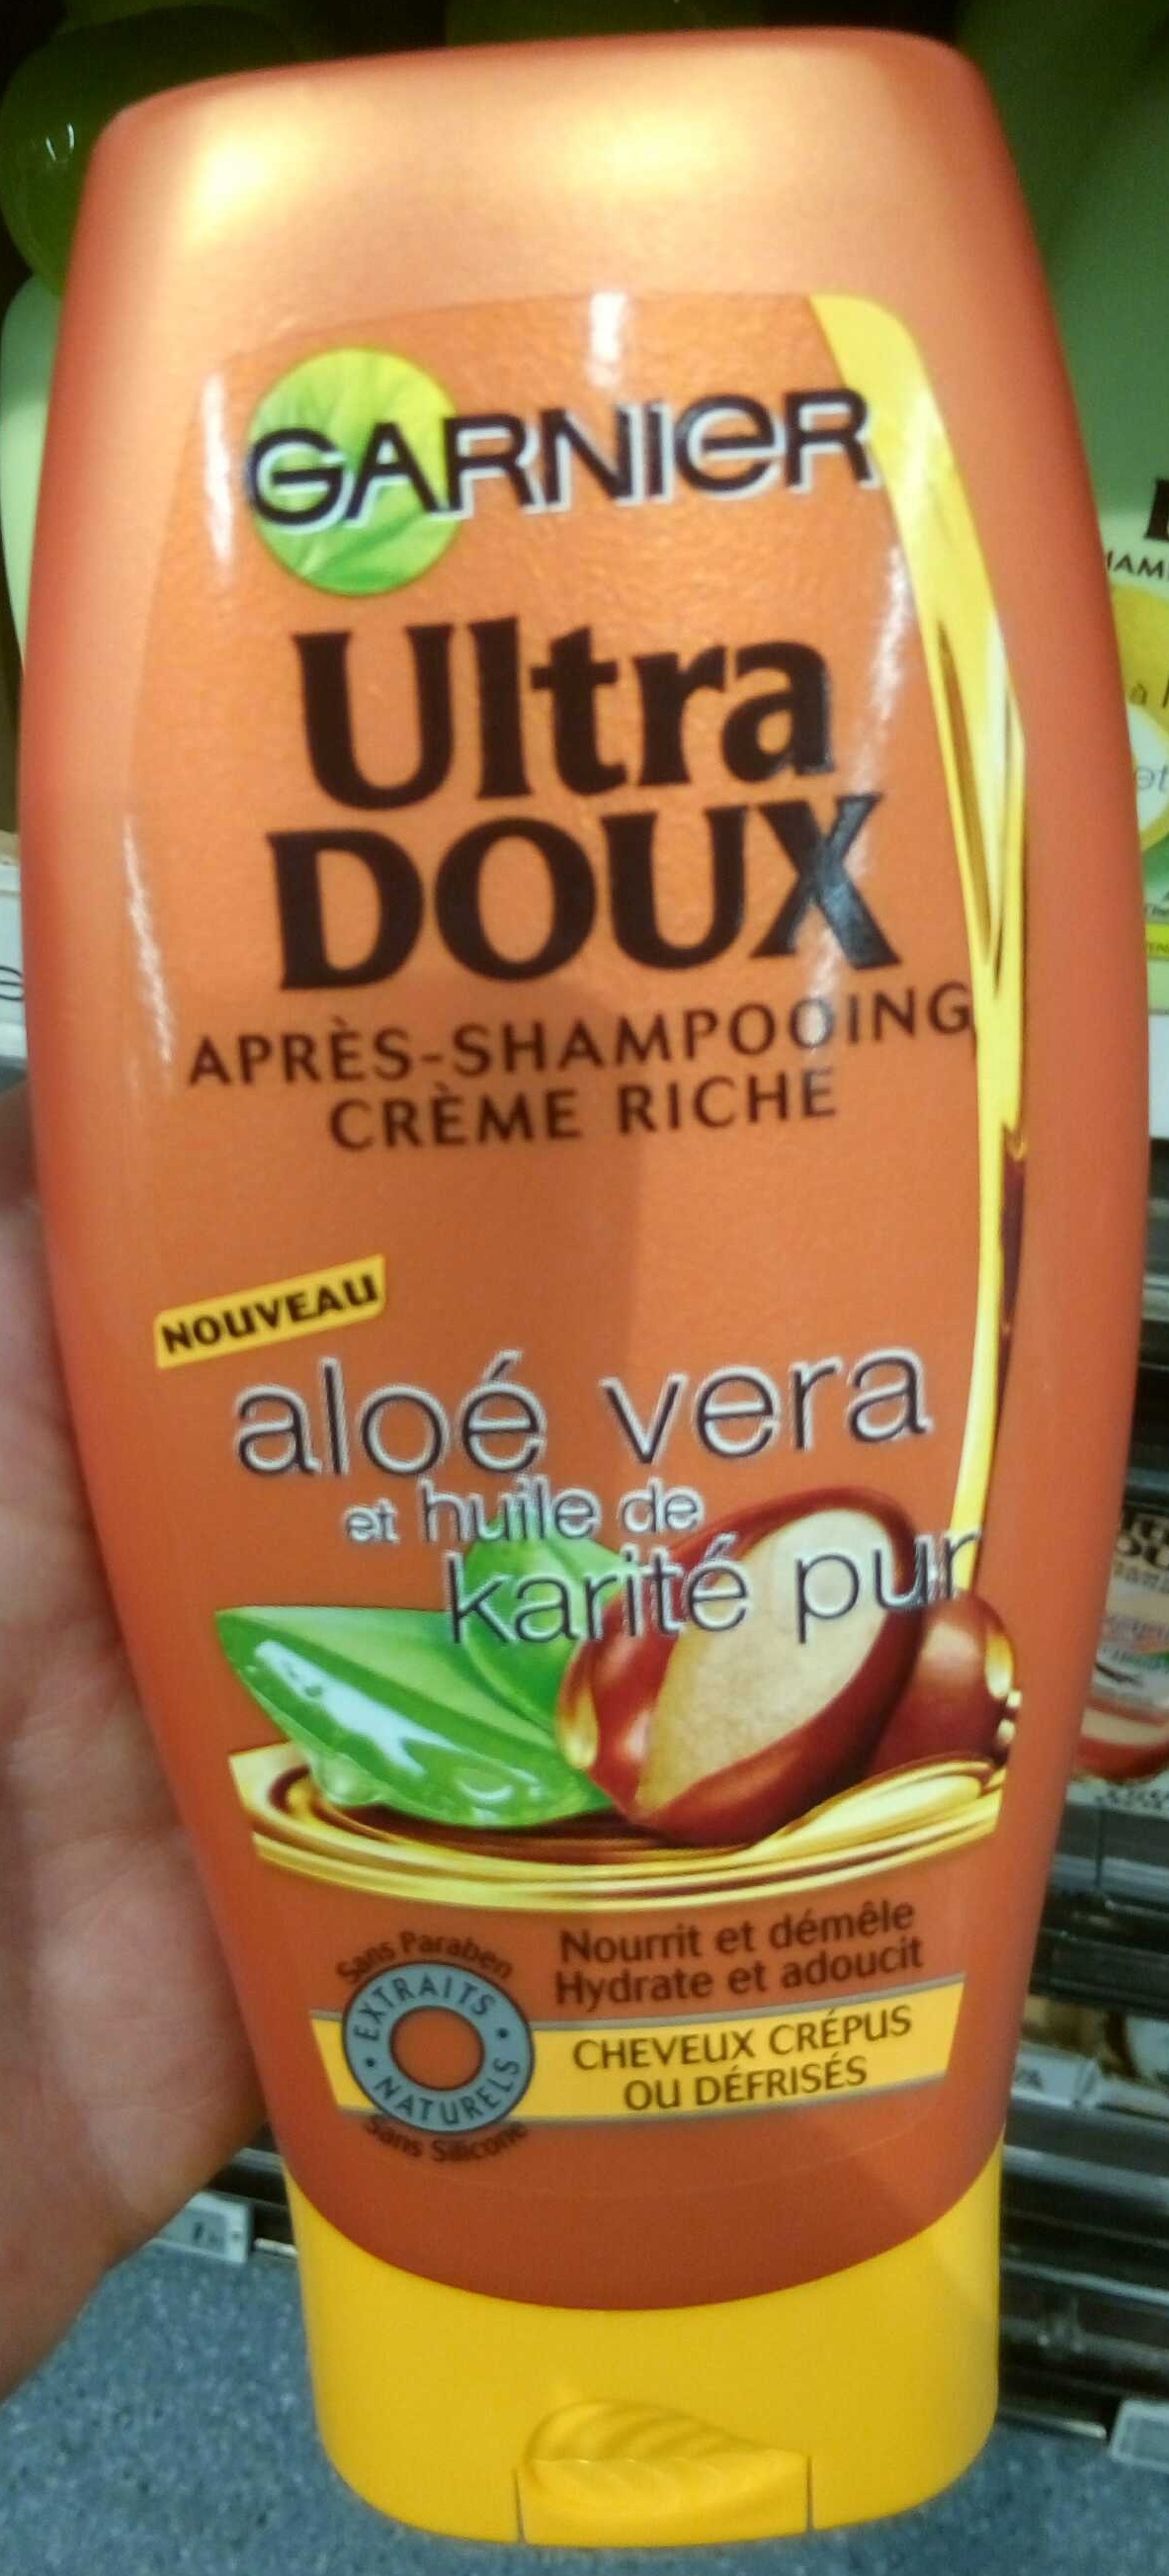 Ultra Doux Après-shampooing crème riche Aloé vera et huile de karité pur - 製品 - fr